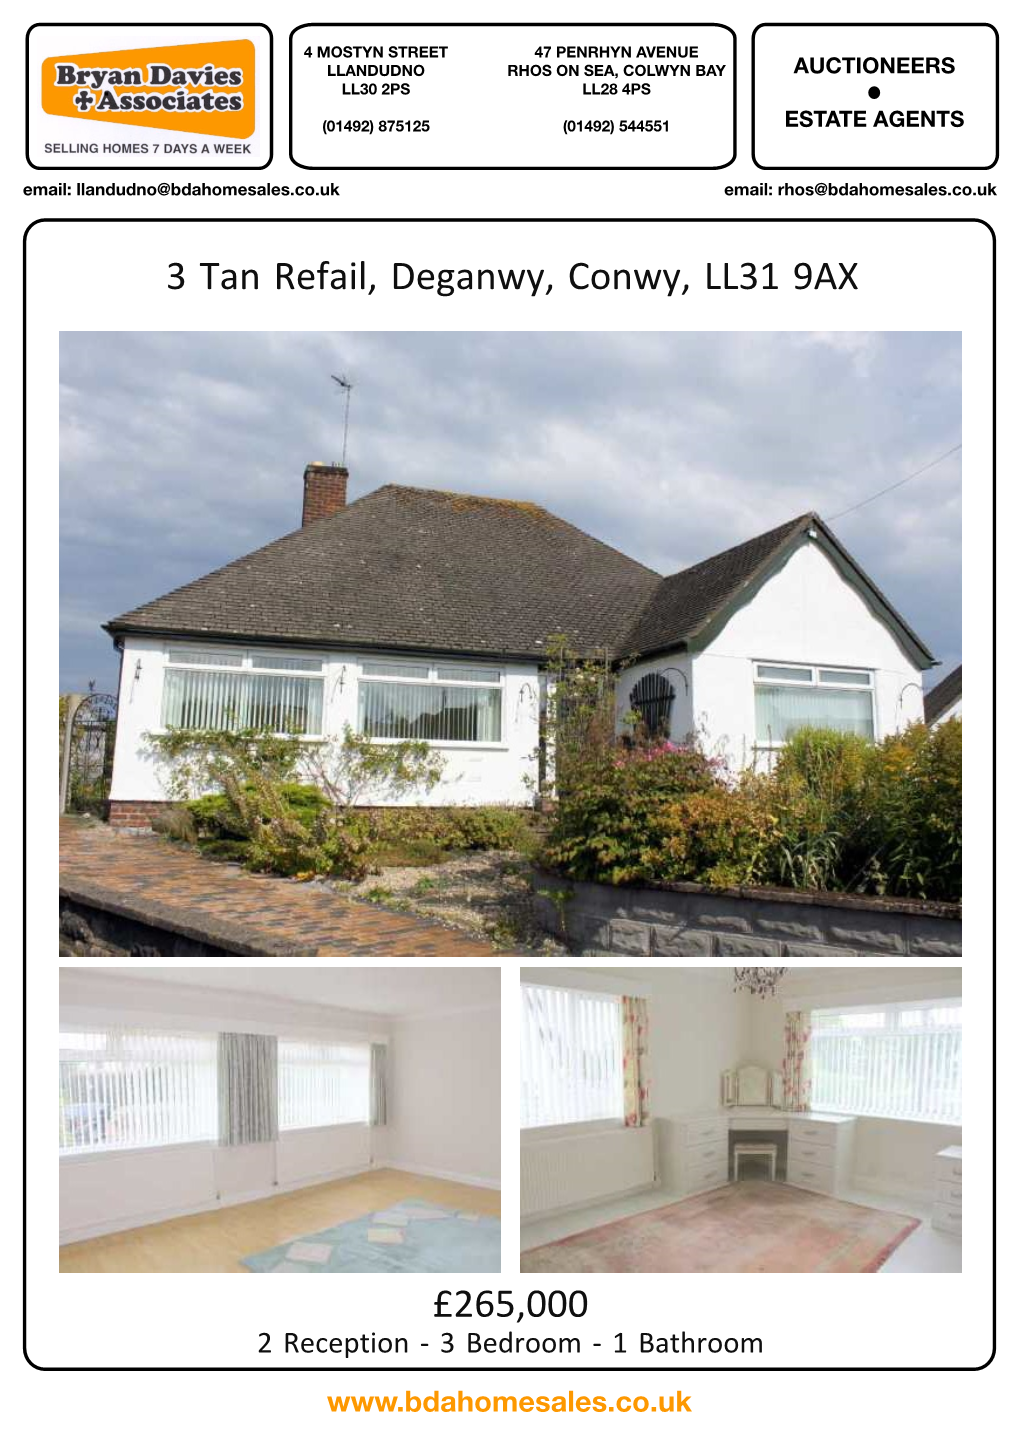 3 Tan Refail, Deganwy, Conwy, LL31 9AX £265,000